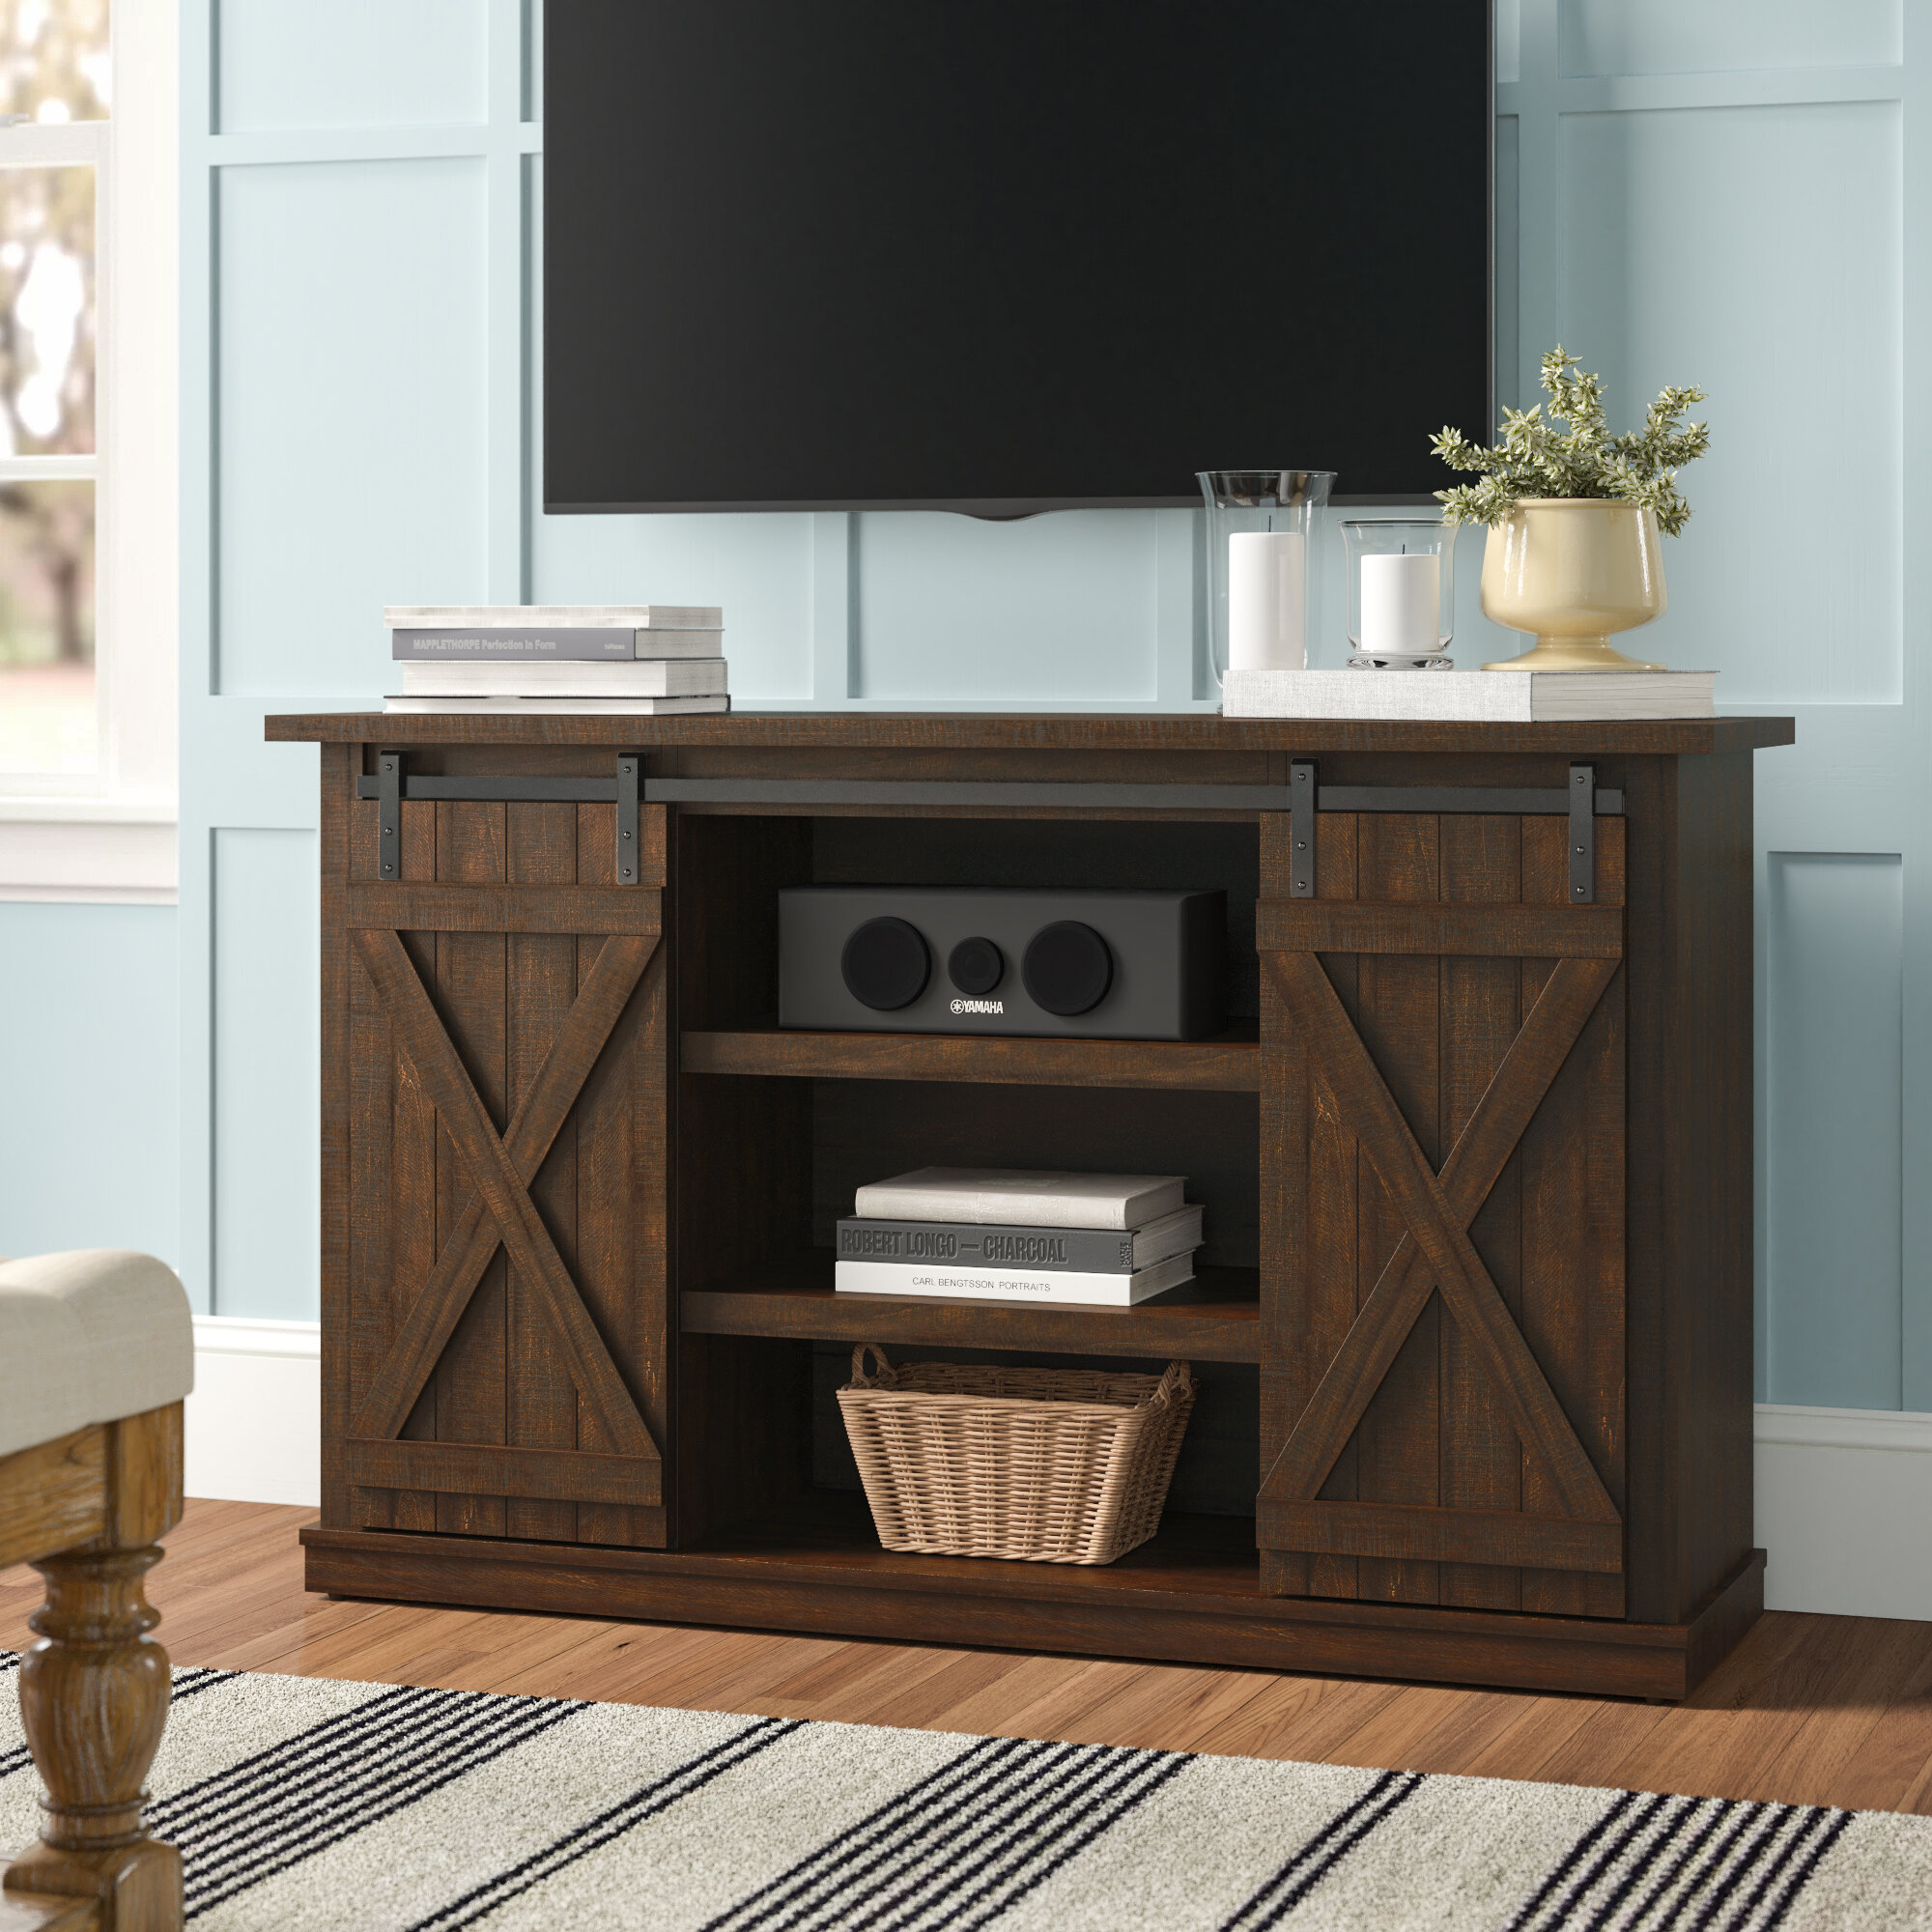 58" TV Stand Espresso Storage Cabinet Modern Wooden Entertainment Media Center 